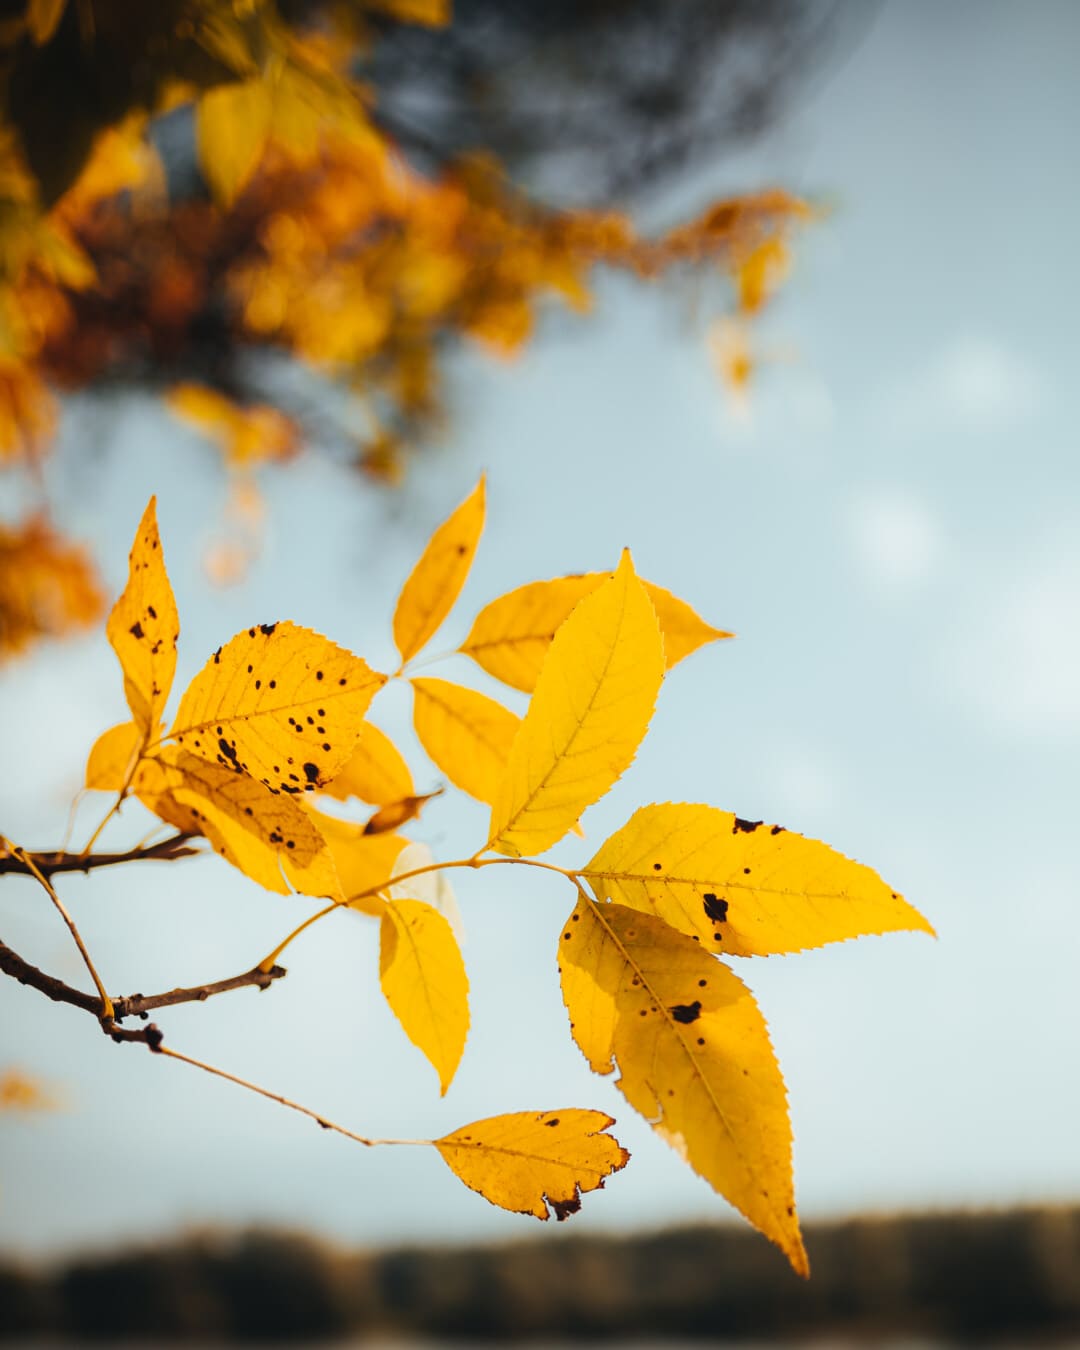 Październik, sezon jesień, żółtawy, gałązka, żółtawo-brązowy, Żółte liście, drzewo, żółty, liść, jesień